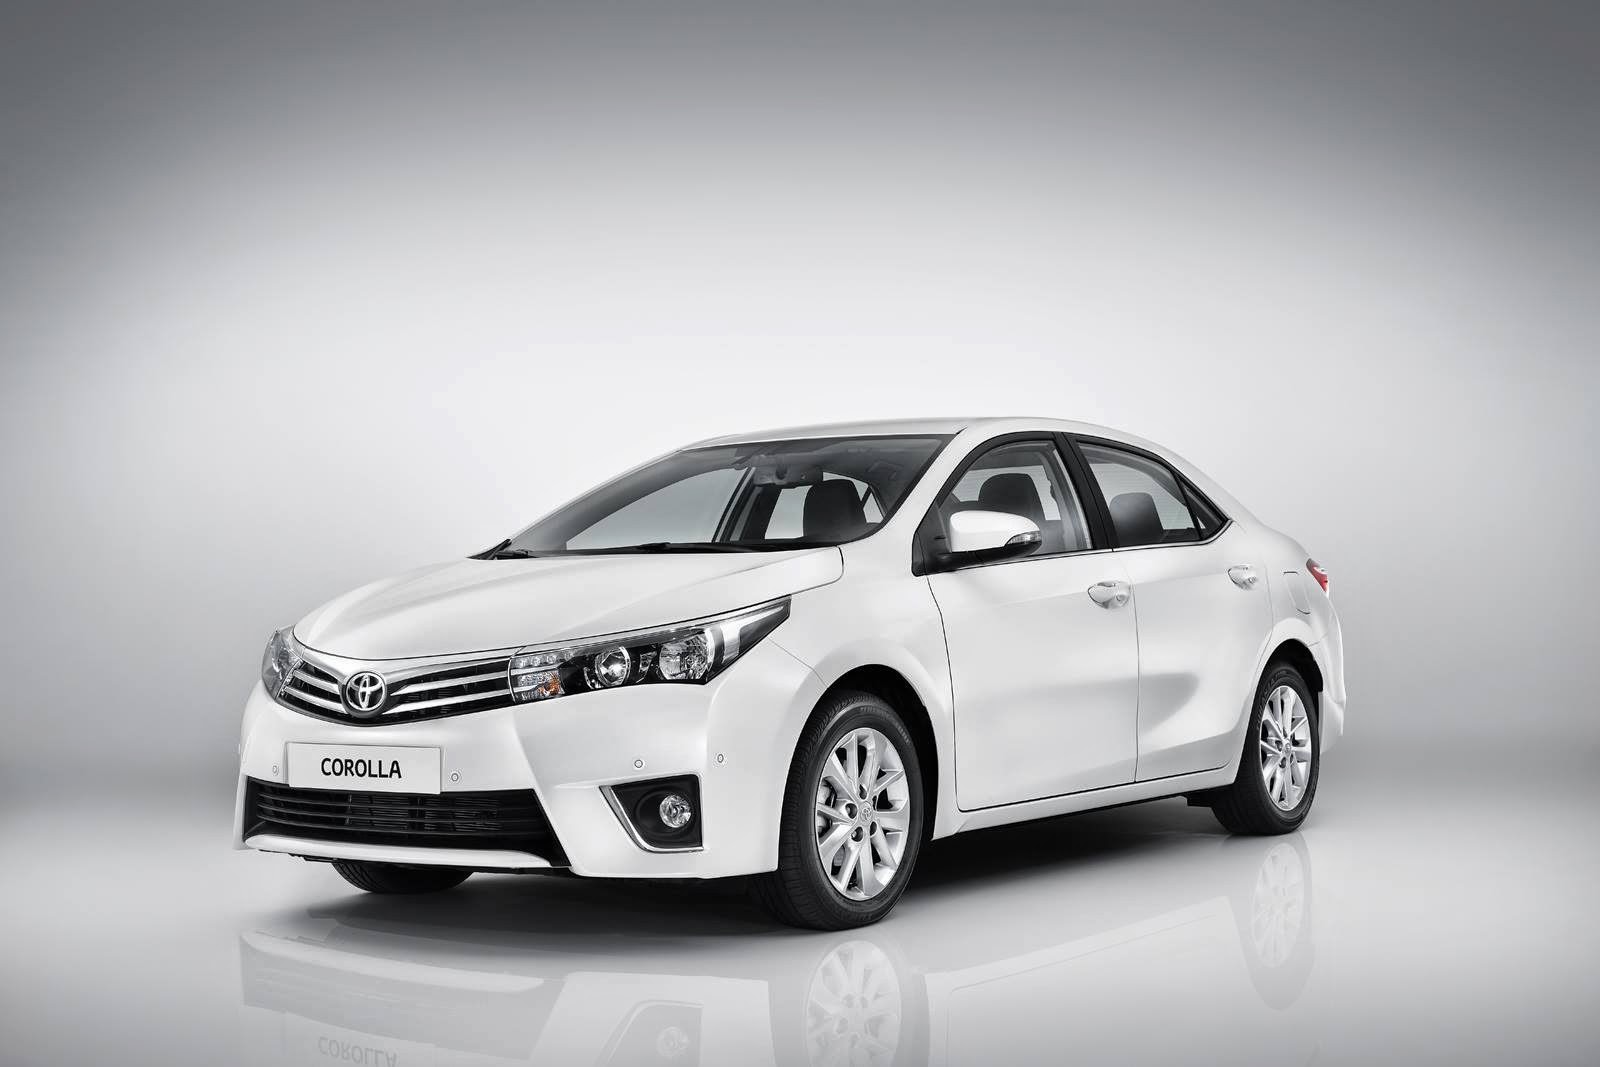 Fuel Economy: Toyota Corolla 2014 Specs and Fuel Economy